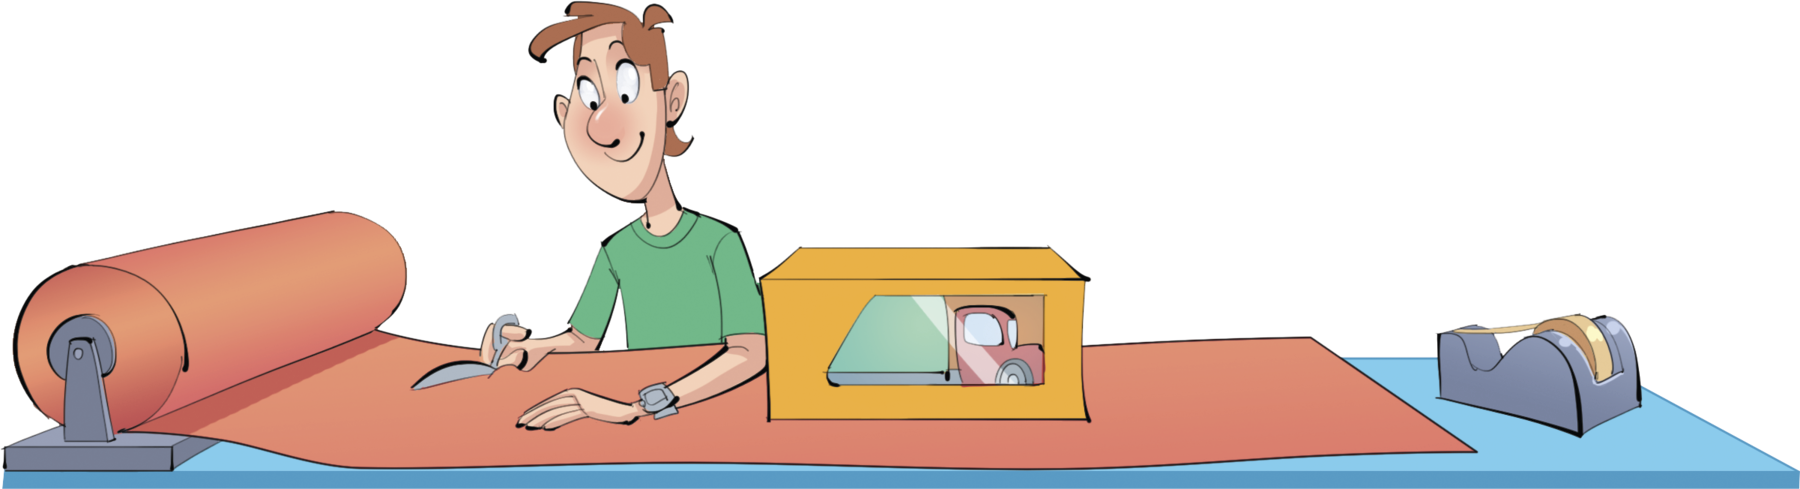 Ilustração. 
Homem de cabelo castanho e blusa verde está cortando um pedaço de papel vermelho de um rolo. 
Sobre o papel, caixa e ao lado, suporte com fita adesiva.